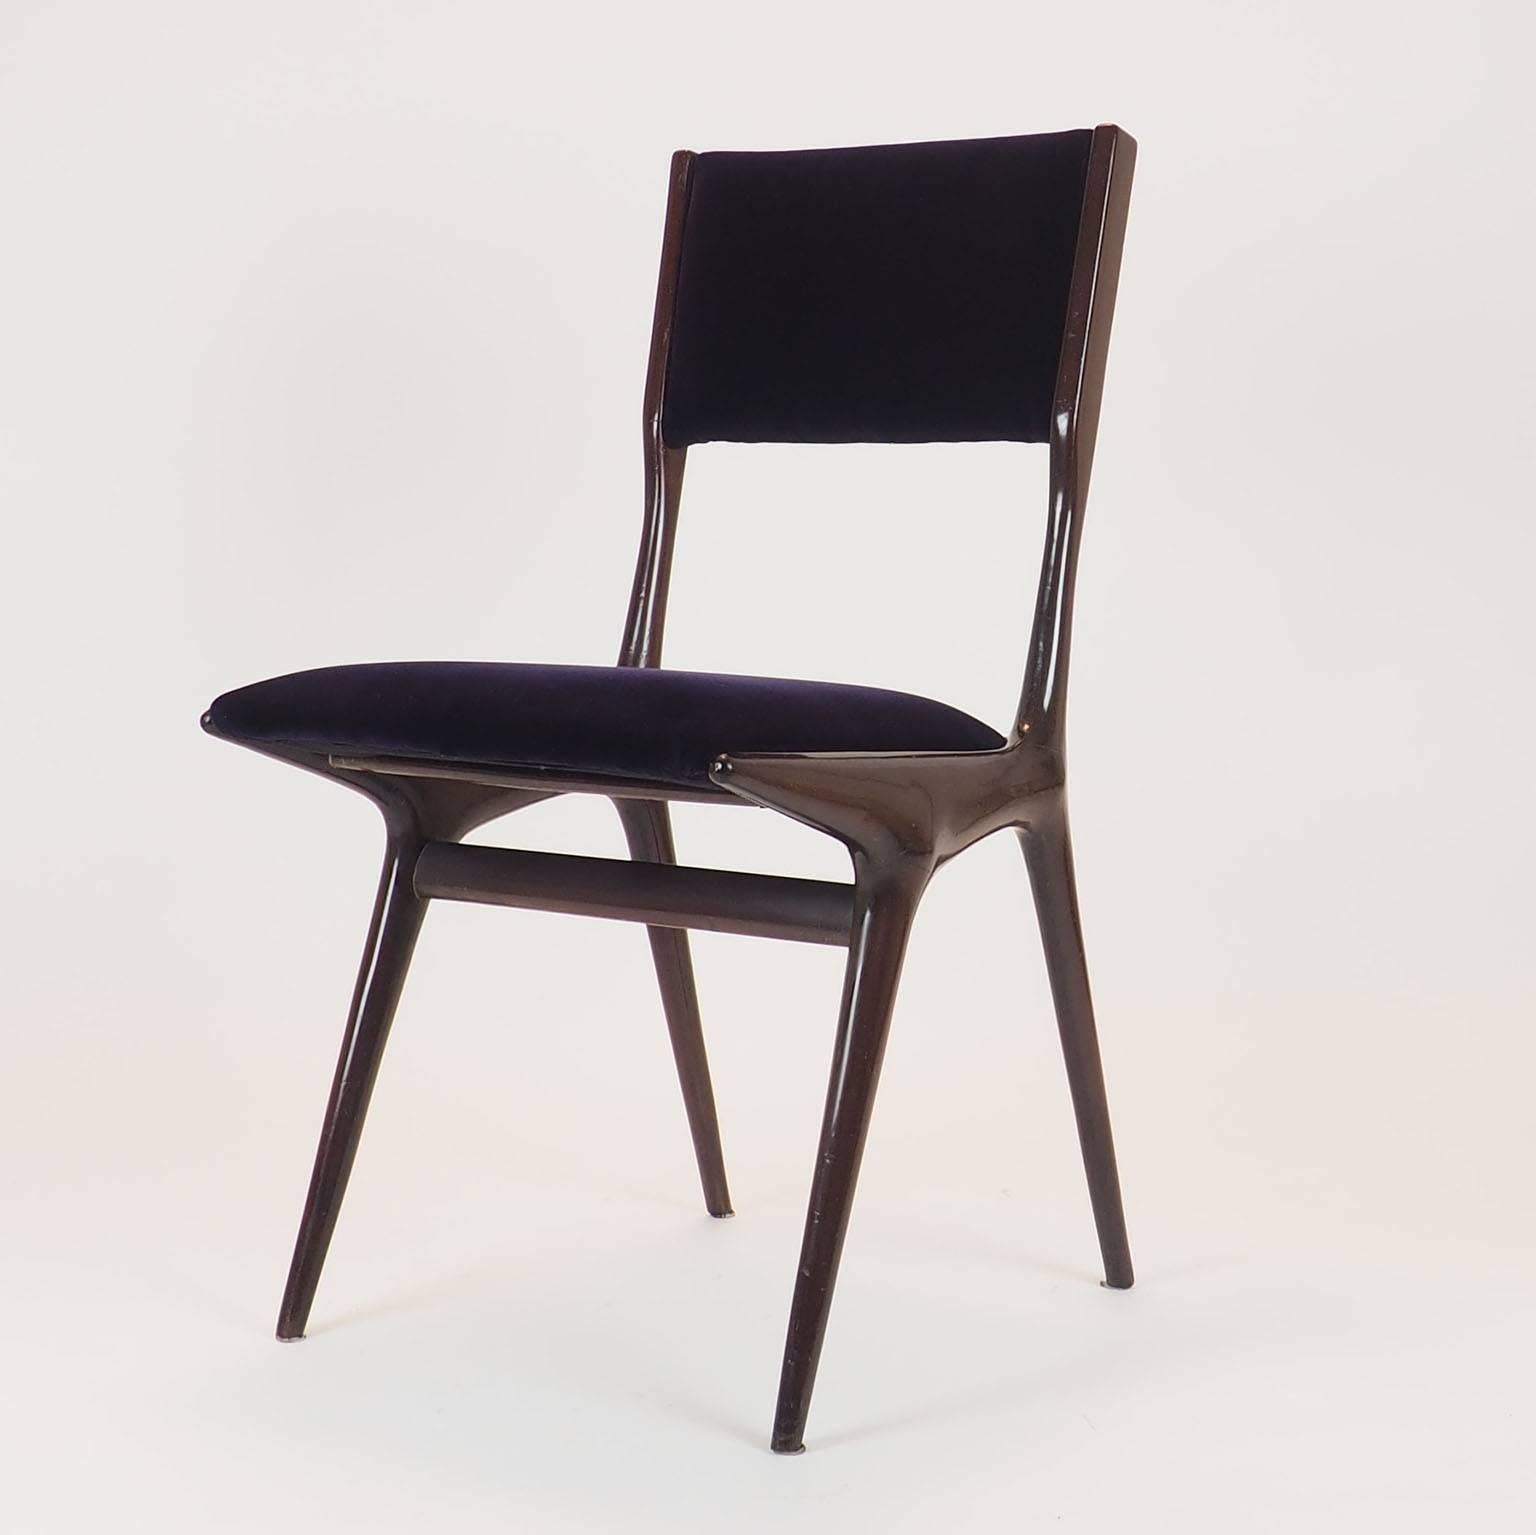 Carlo de Carli Sculptural Chair Designed for Cassina, Milano IX Triennale, 1951 1